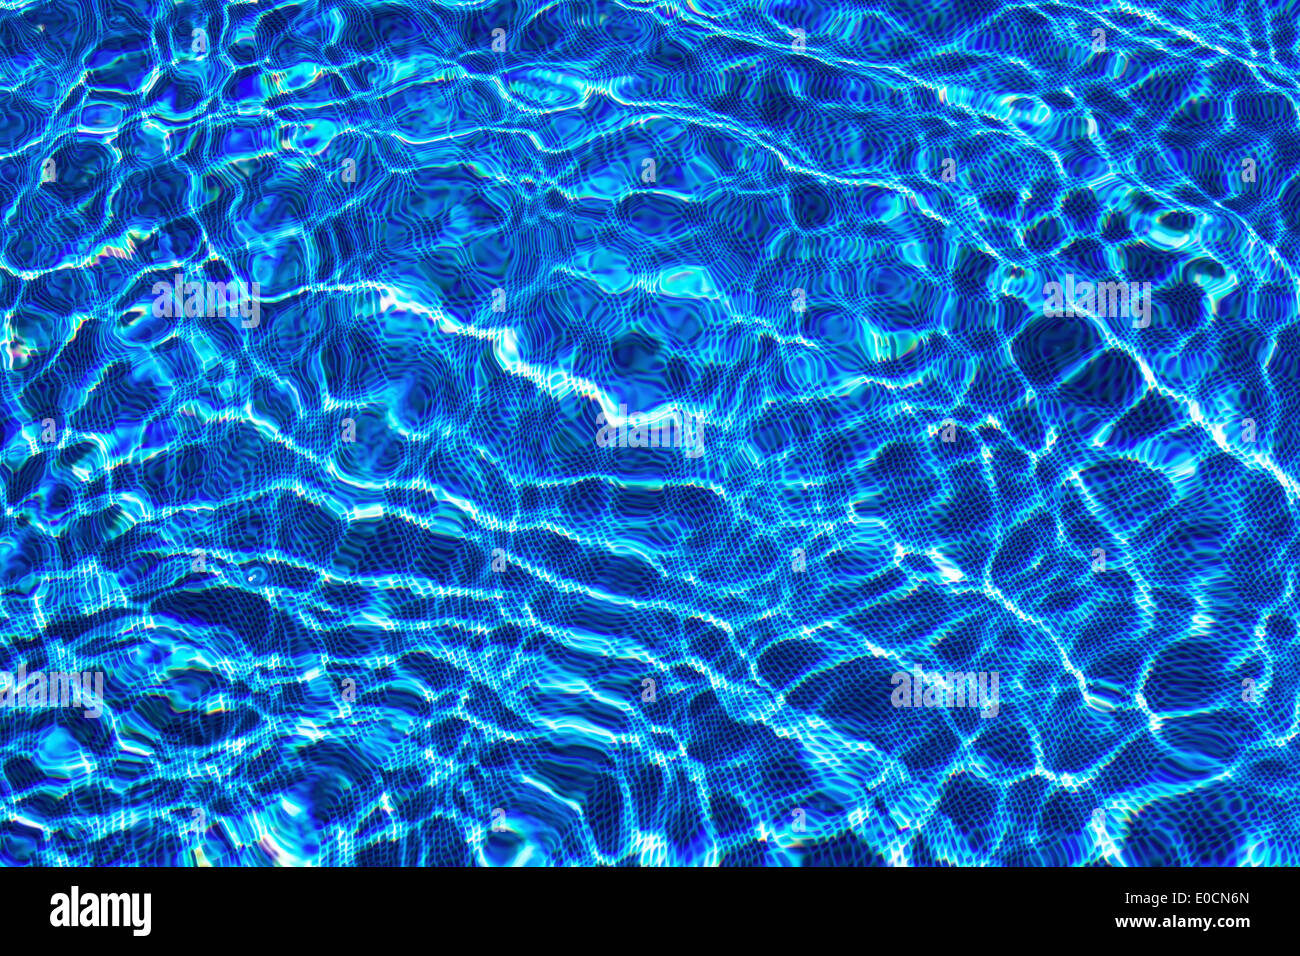 Giochi di luce e di riflessi di acqua in una piscina. Immagine in blu forbackground adatto, Lichtspiele und Wasserreflexe in eine Foto Stock